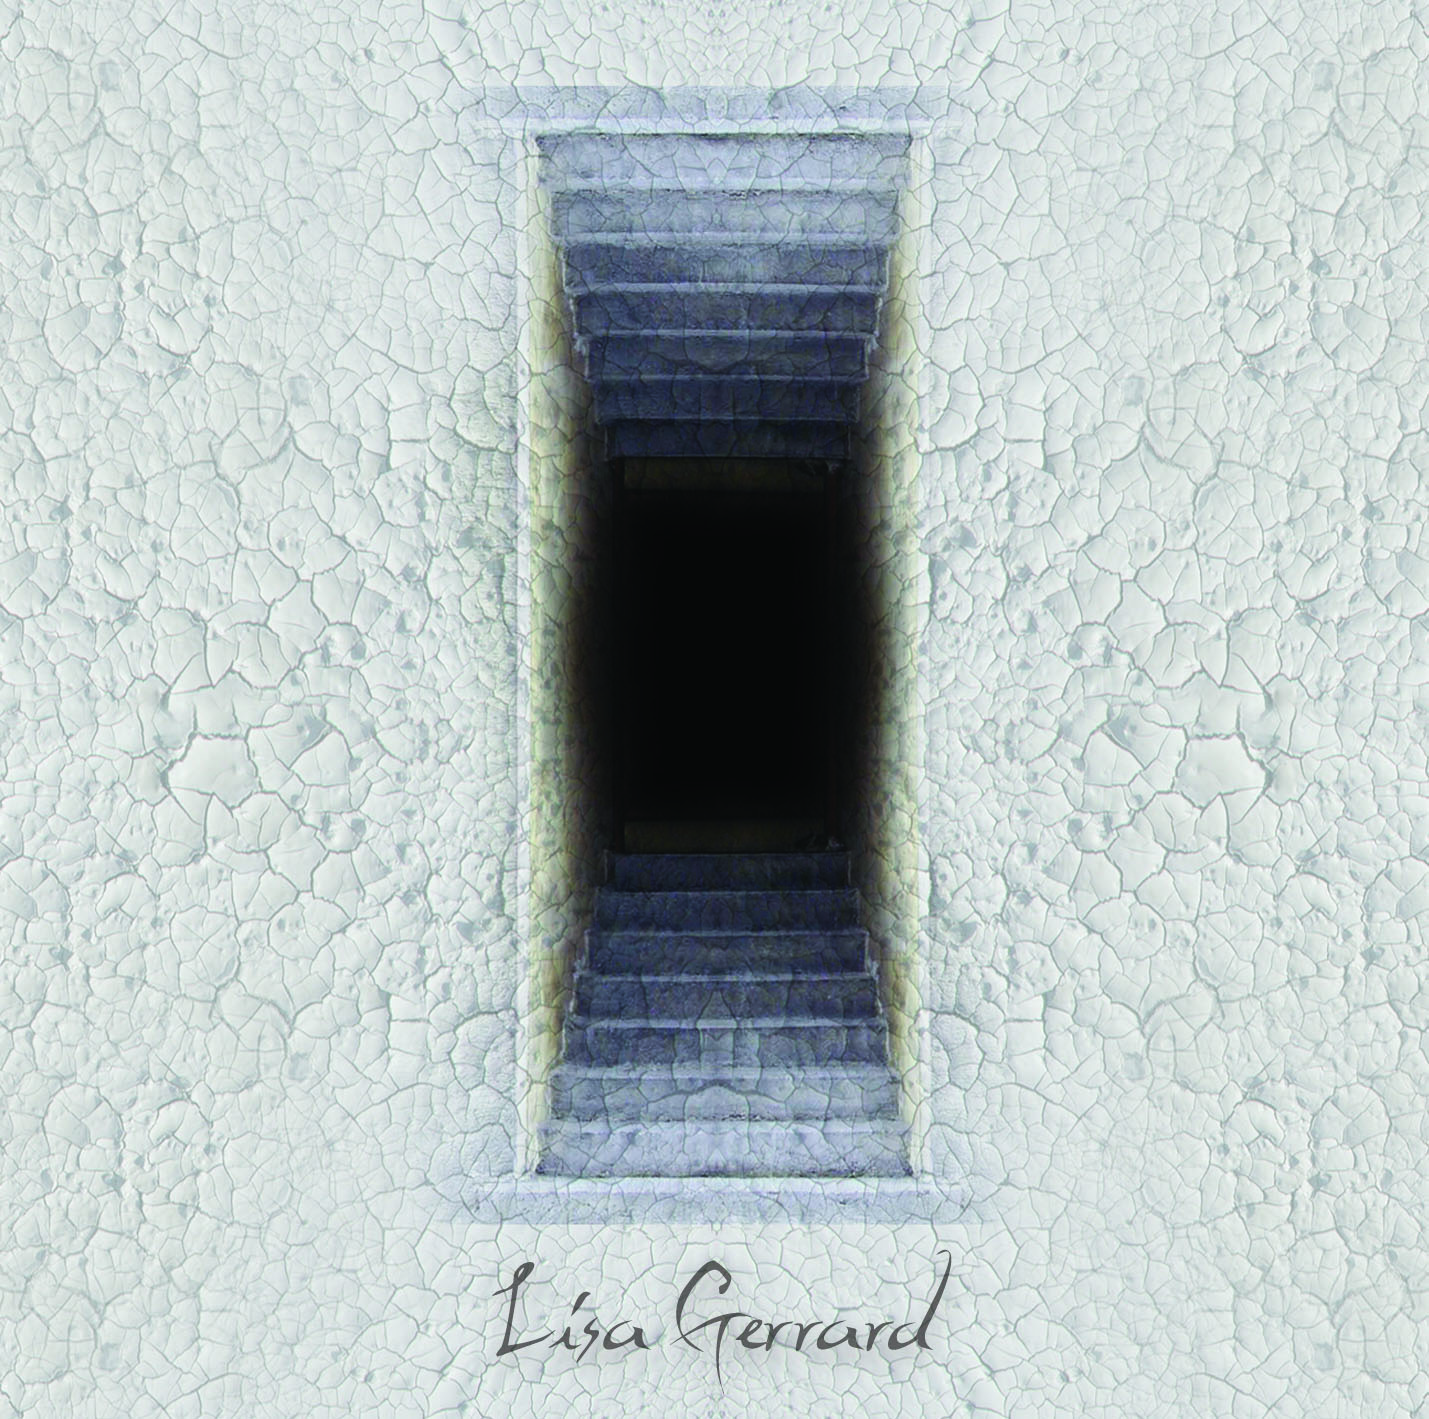 Lisa Gerrard - The Best of Lisa Gerrard - CD